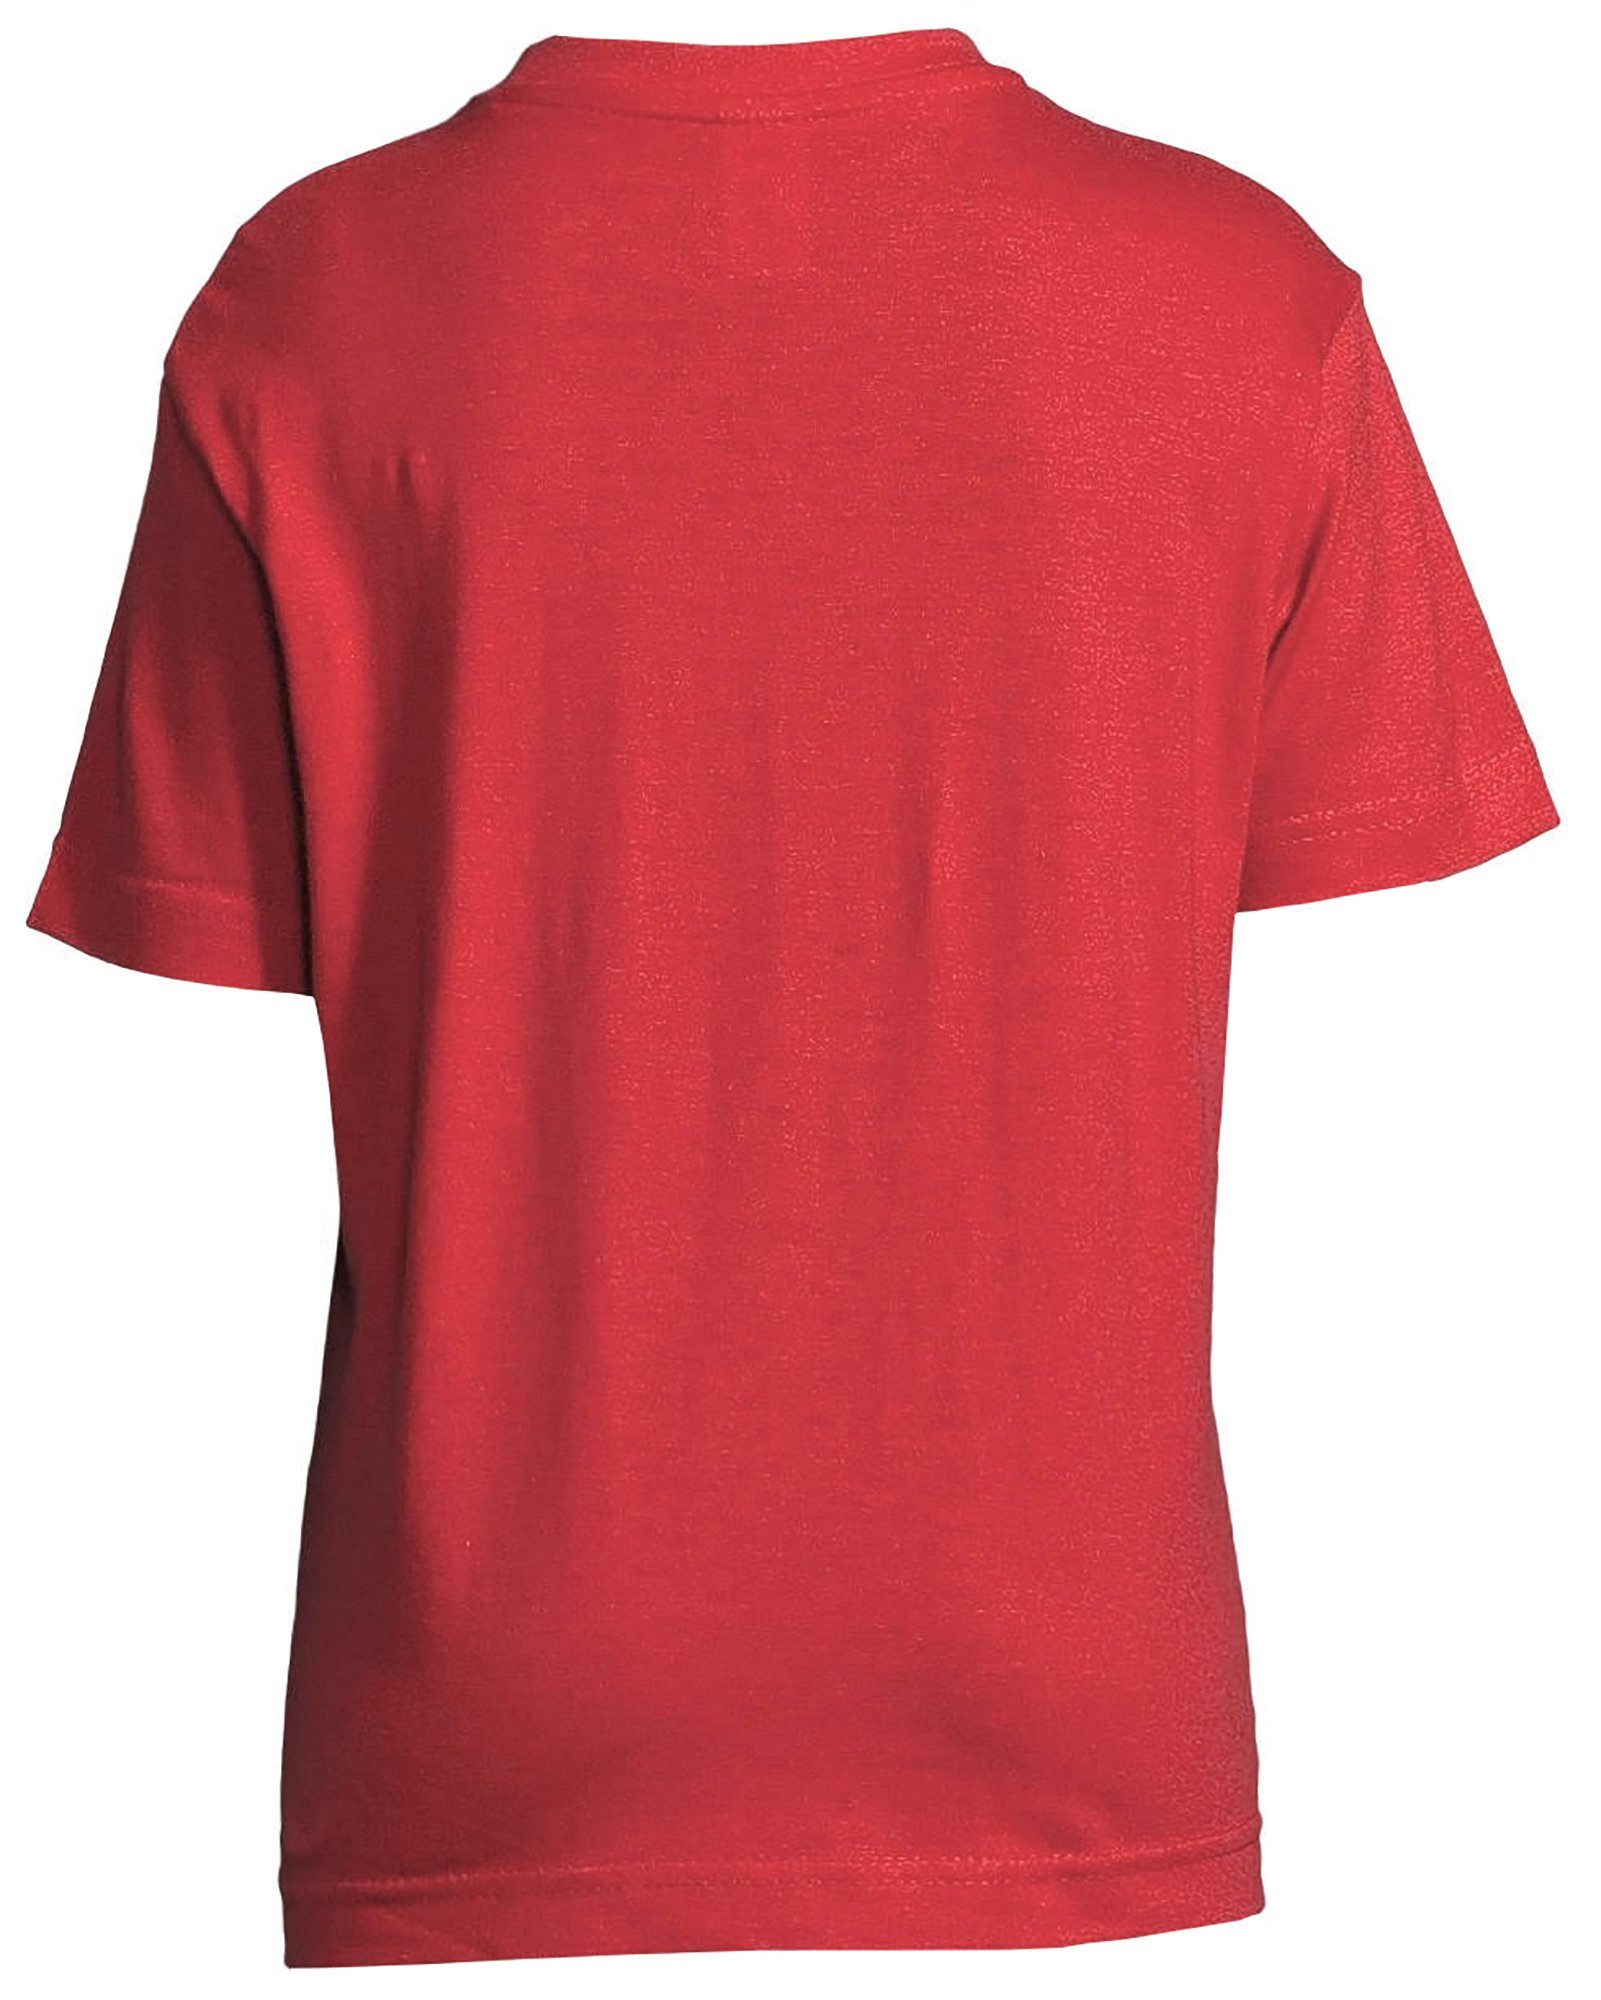 MyDesign24 Kinder mit T-Shirt Herzschlaglinie Pferdekopf Print-Shirt i154 bedrucktes rot Baumwollshirt mit Aufdruck,